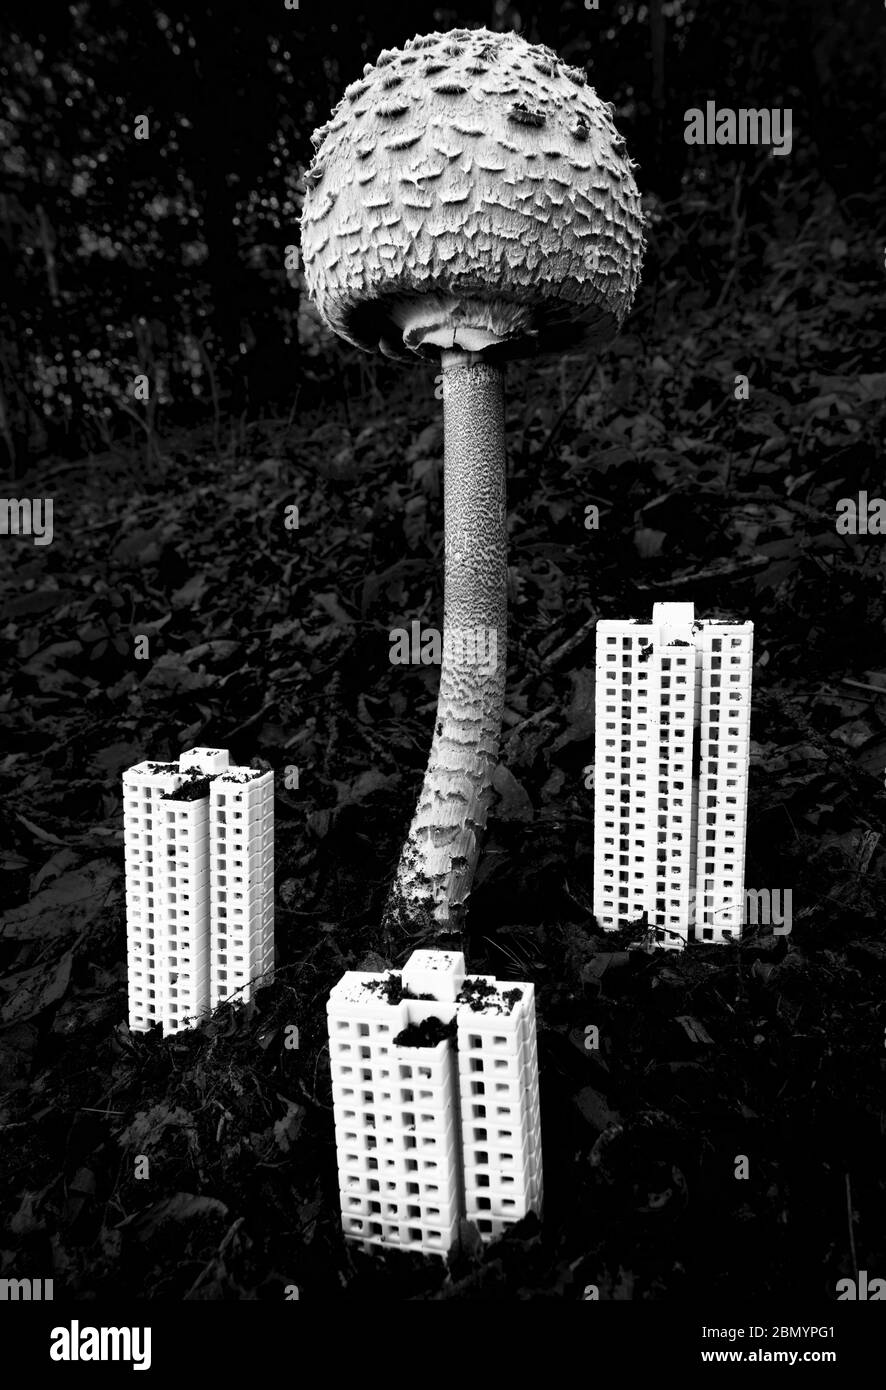 Riesige atomare Pilz in der Nähe von Wolkenkratzern Stockfoto